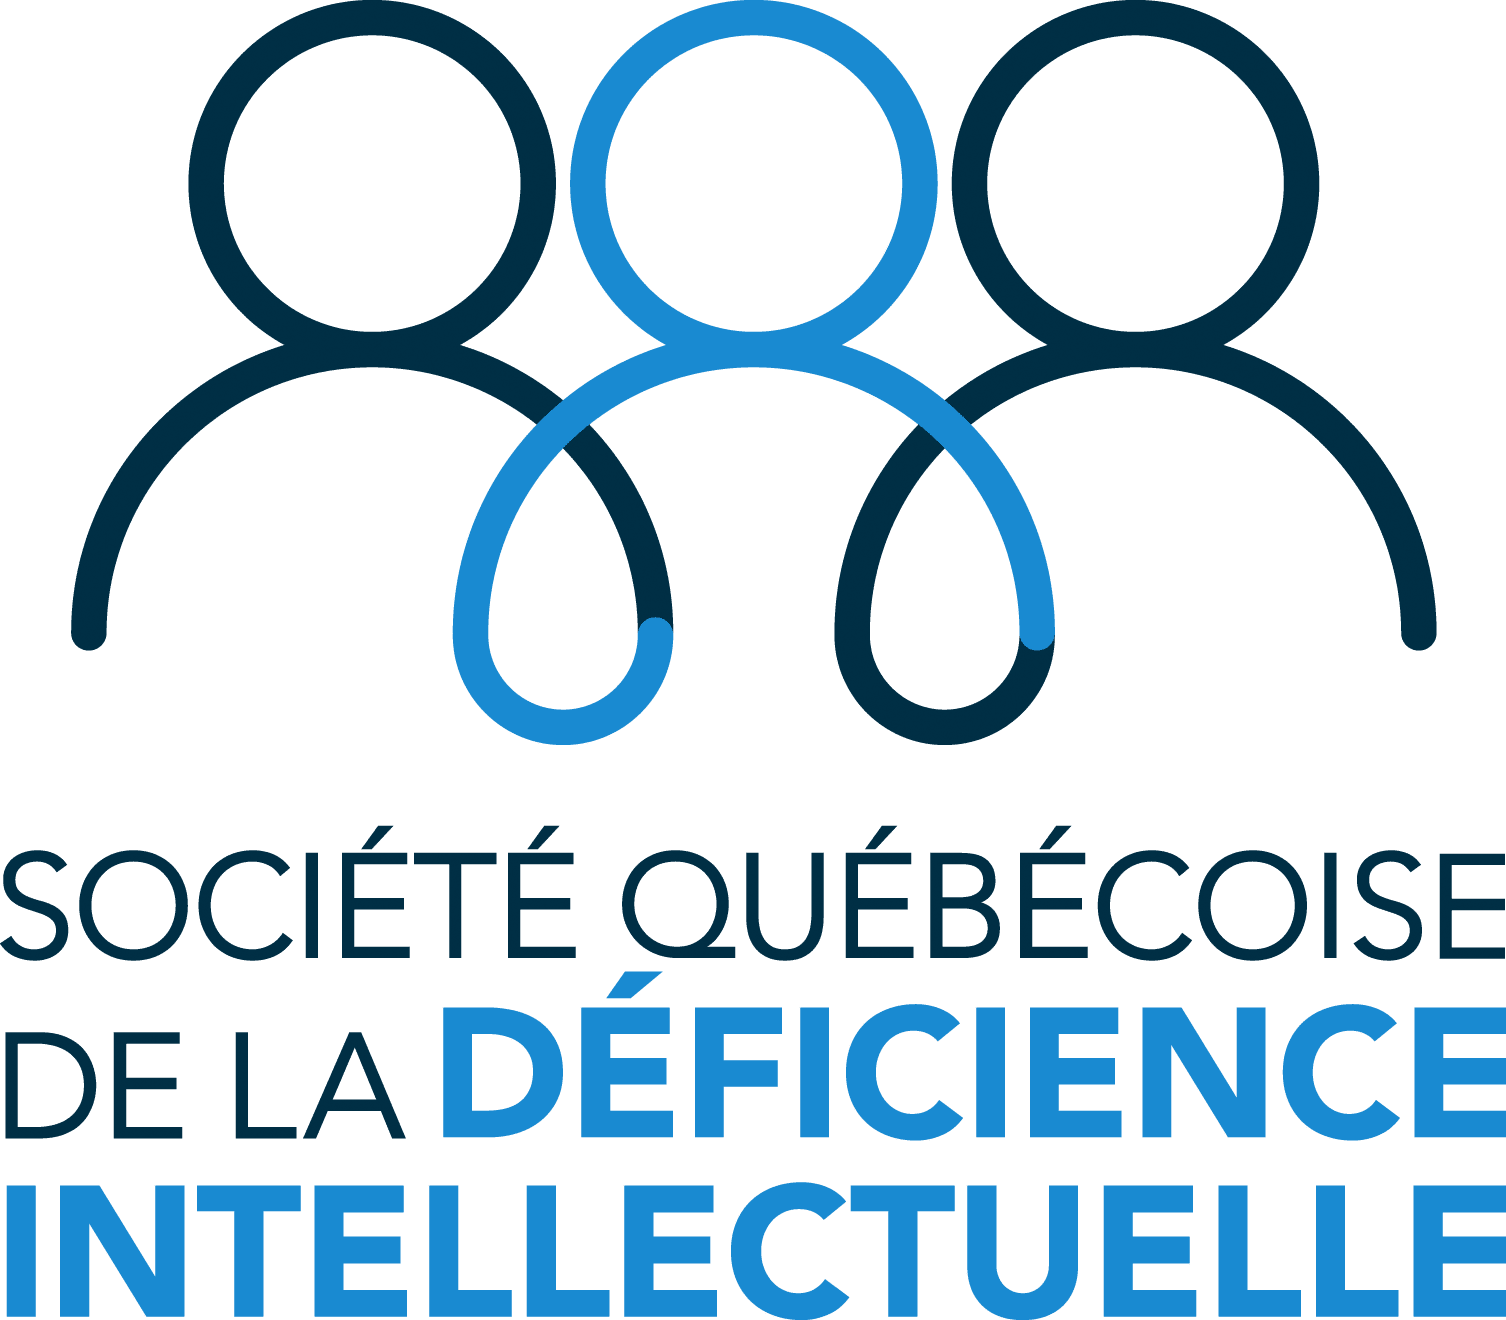 Société québécoise de la déficience intellectuelle